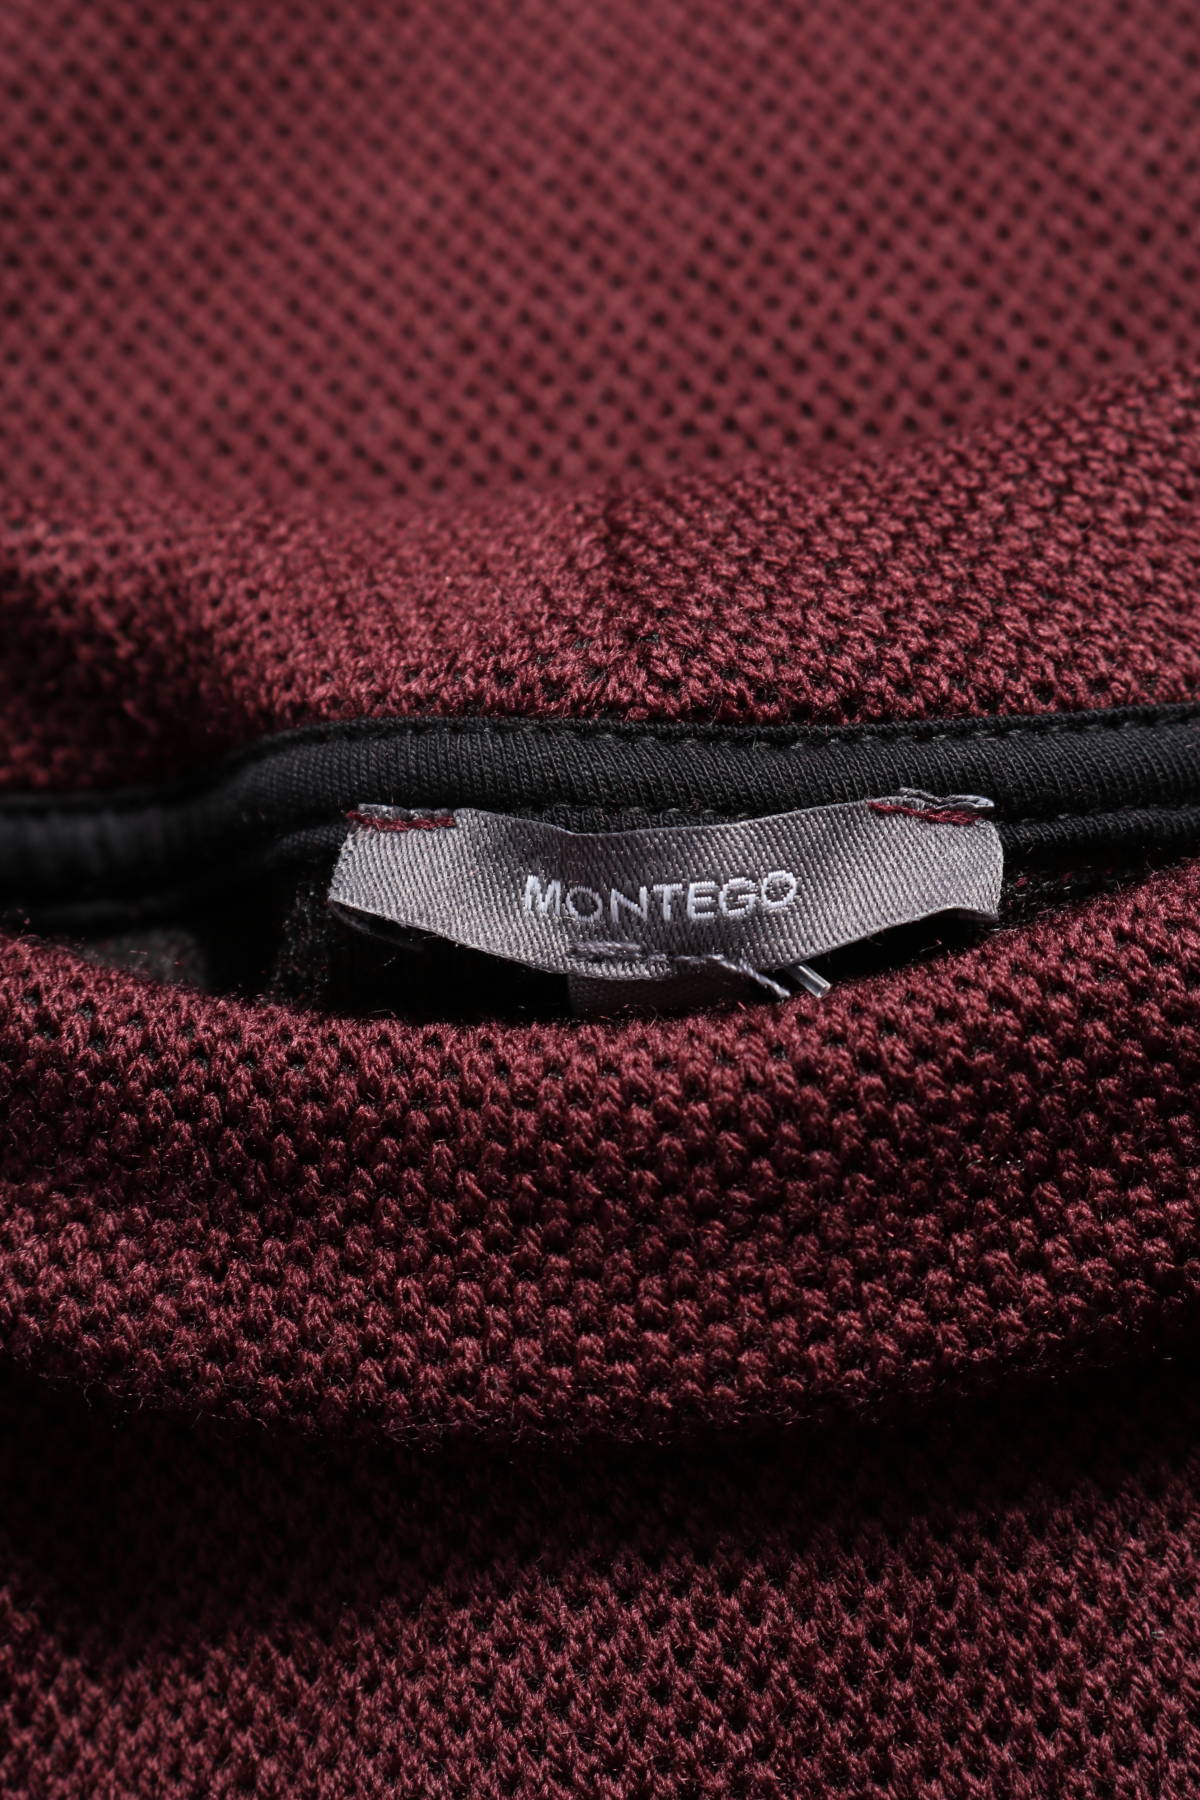 Пуловер с поло яка MONTEGO3